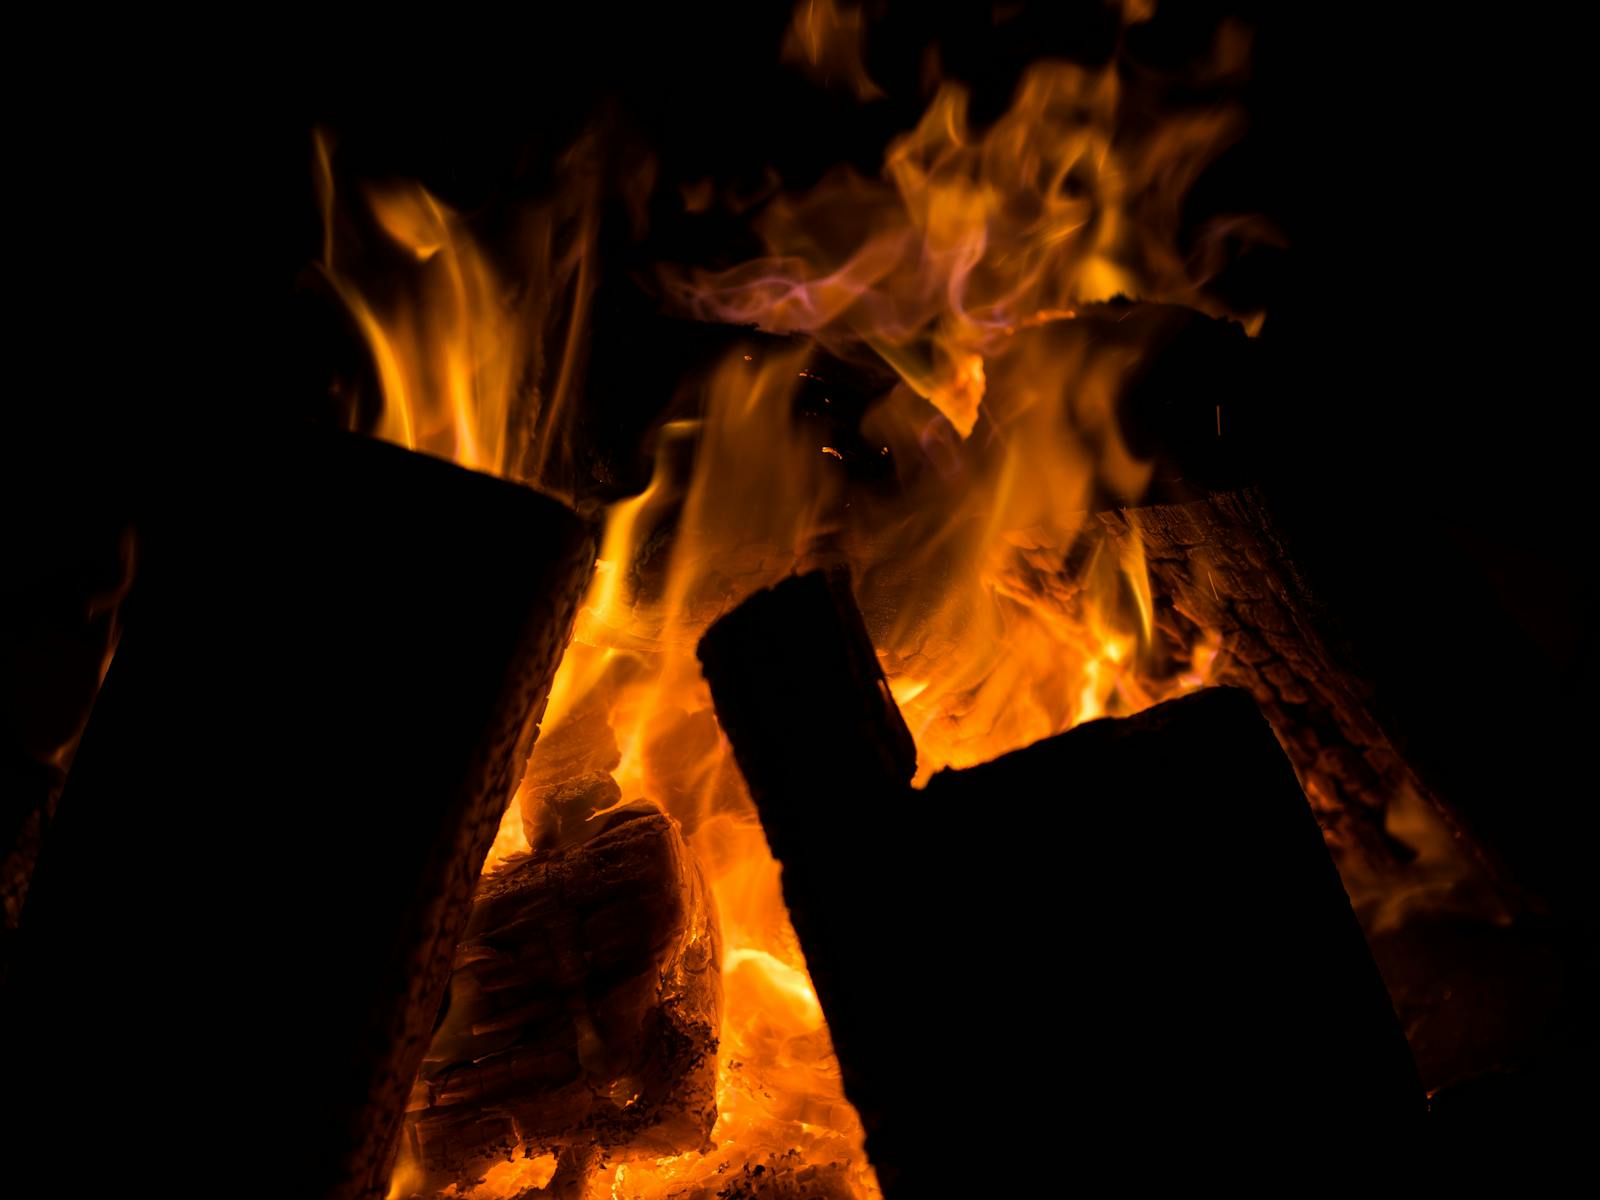 Bonfire burning in the dark night